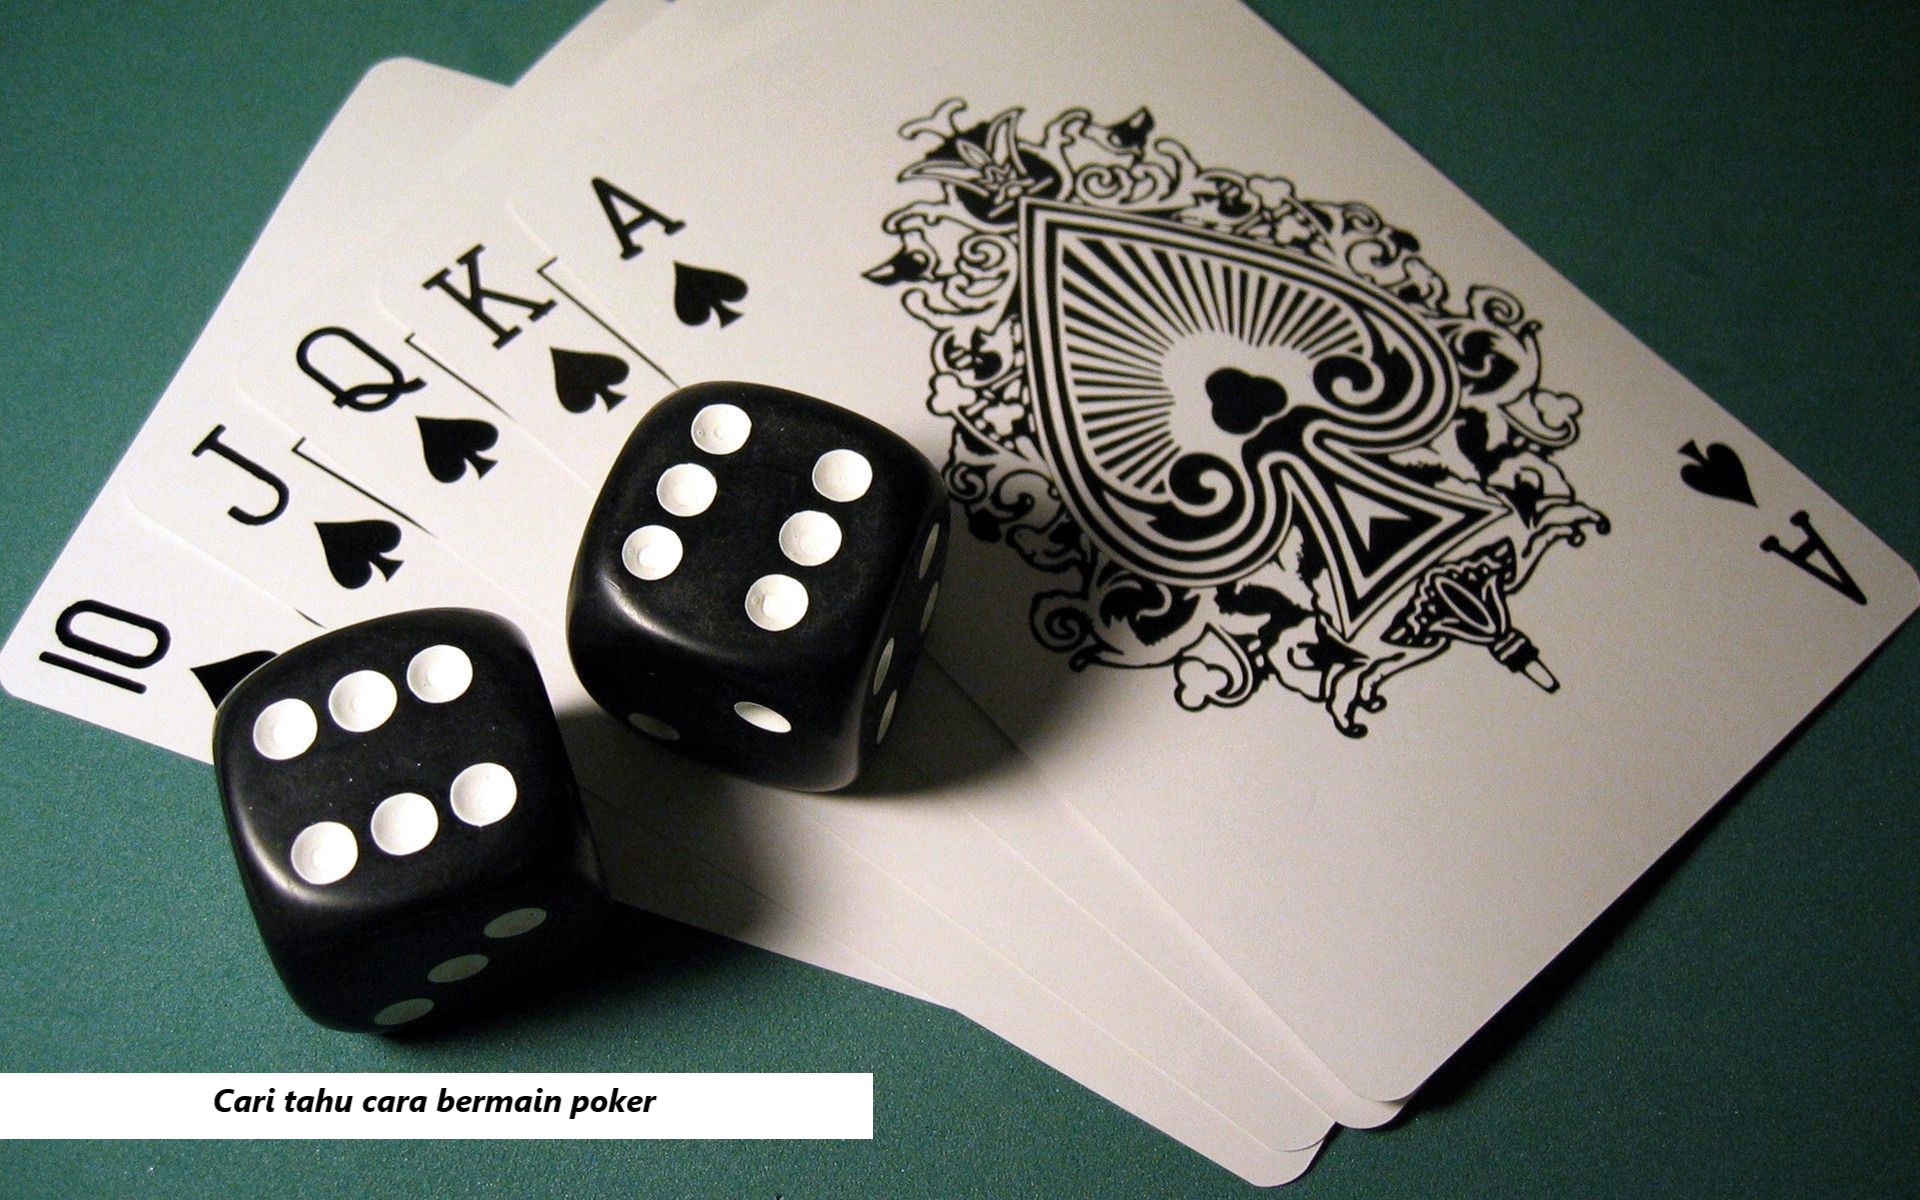 Cari tahu cara bermain poker